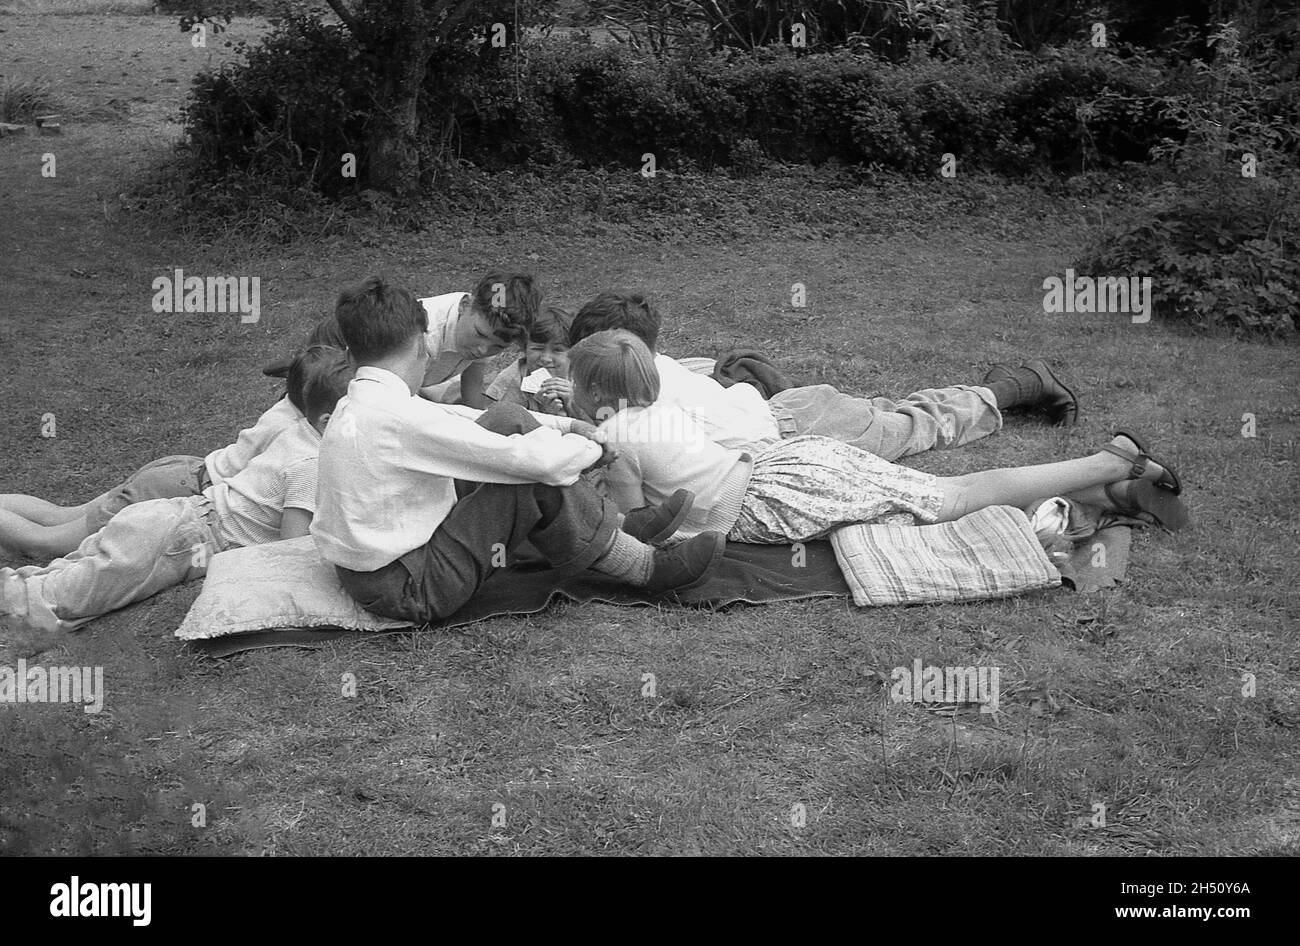 1950, historisch, eine Gruppe von kleinen Kindern, die auf Decken und Kissen auf dem Gras zusammen liegen und möglicherweise ein Kartenspiel spielen, England, Großbritannien. Stockfoto